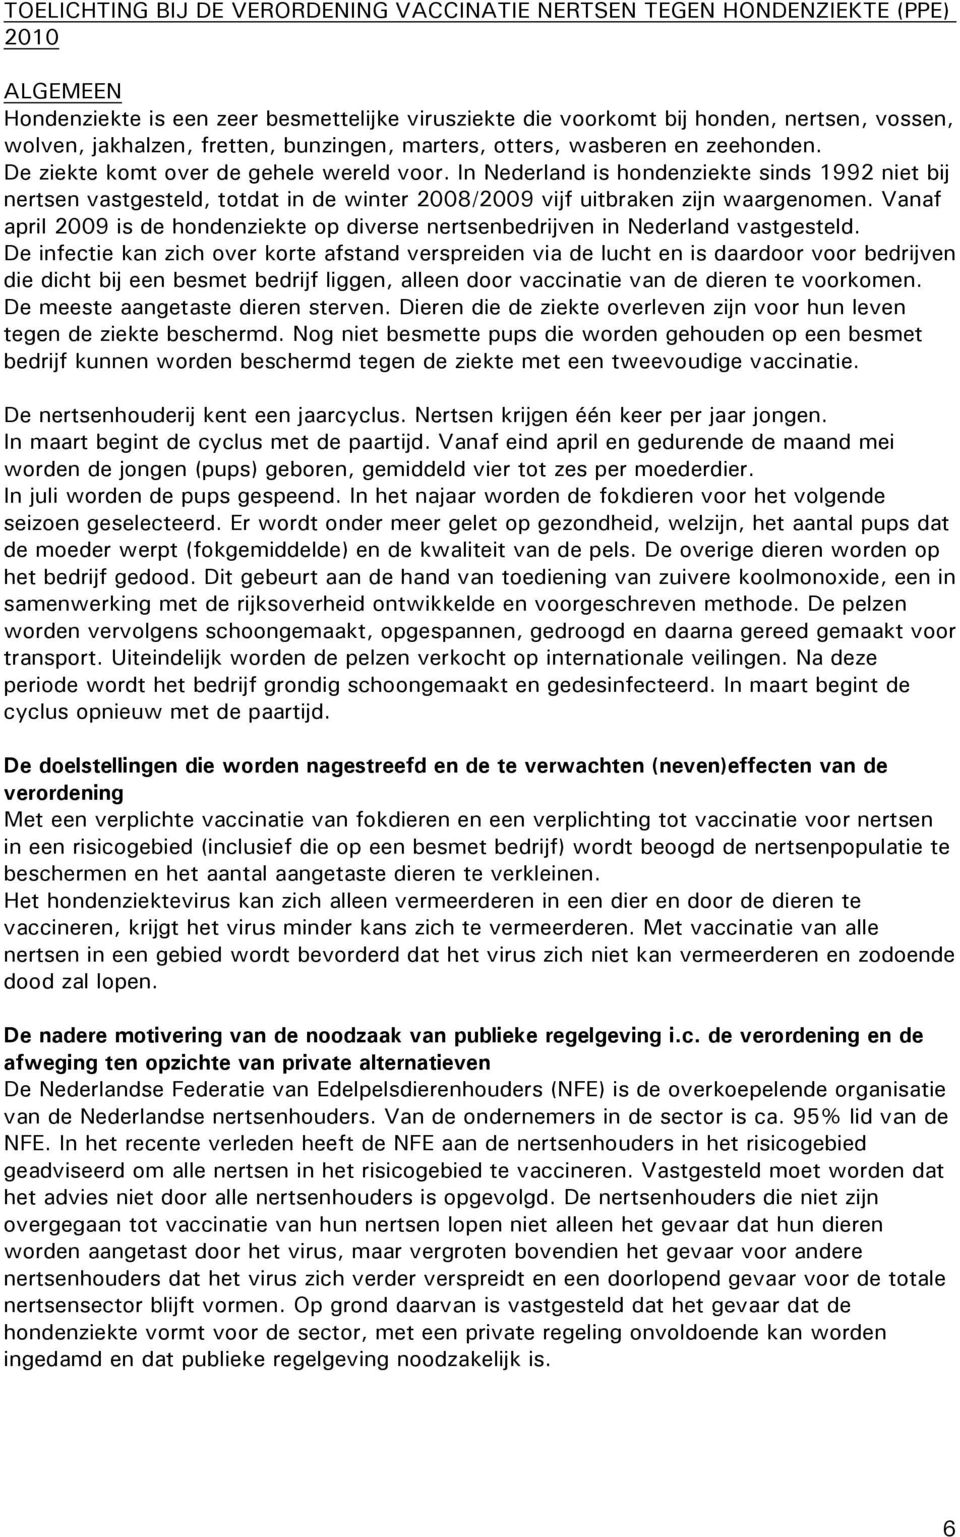 In Nederland is hondenziekte sinds 1992 niet bij nertsen vastgesteld, totdat in de winter 2008/2009 vijf uitbraken zijn waargenomen.